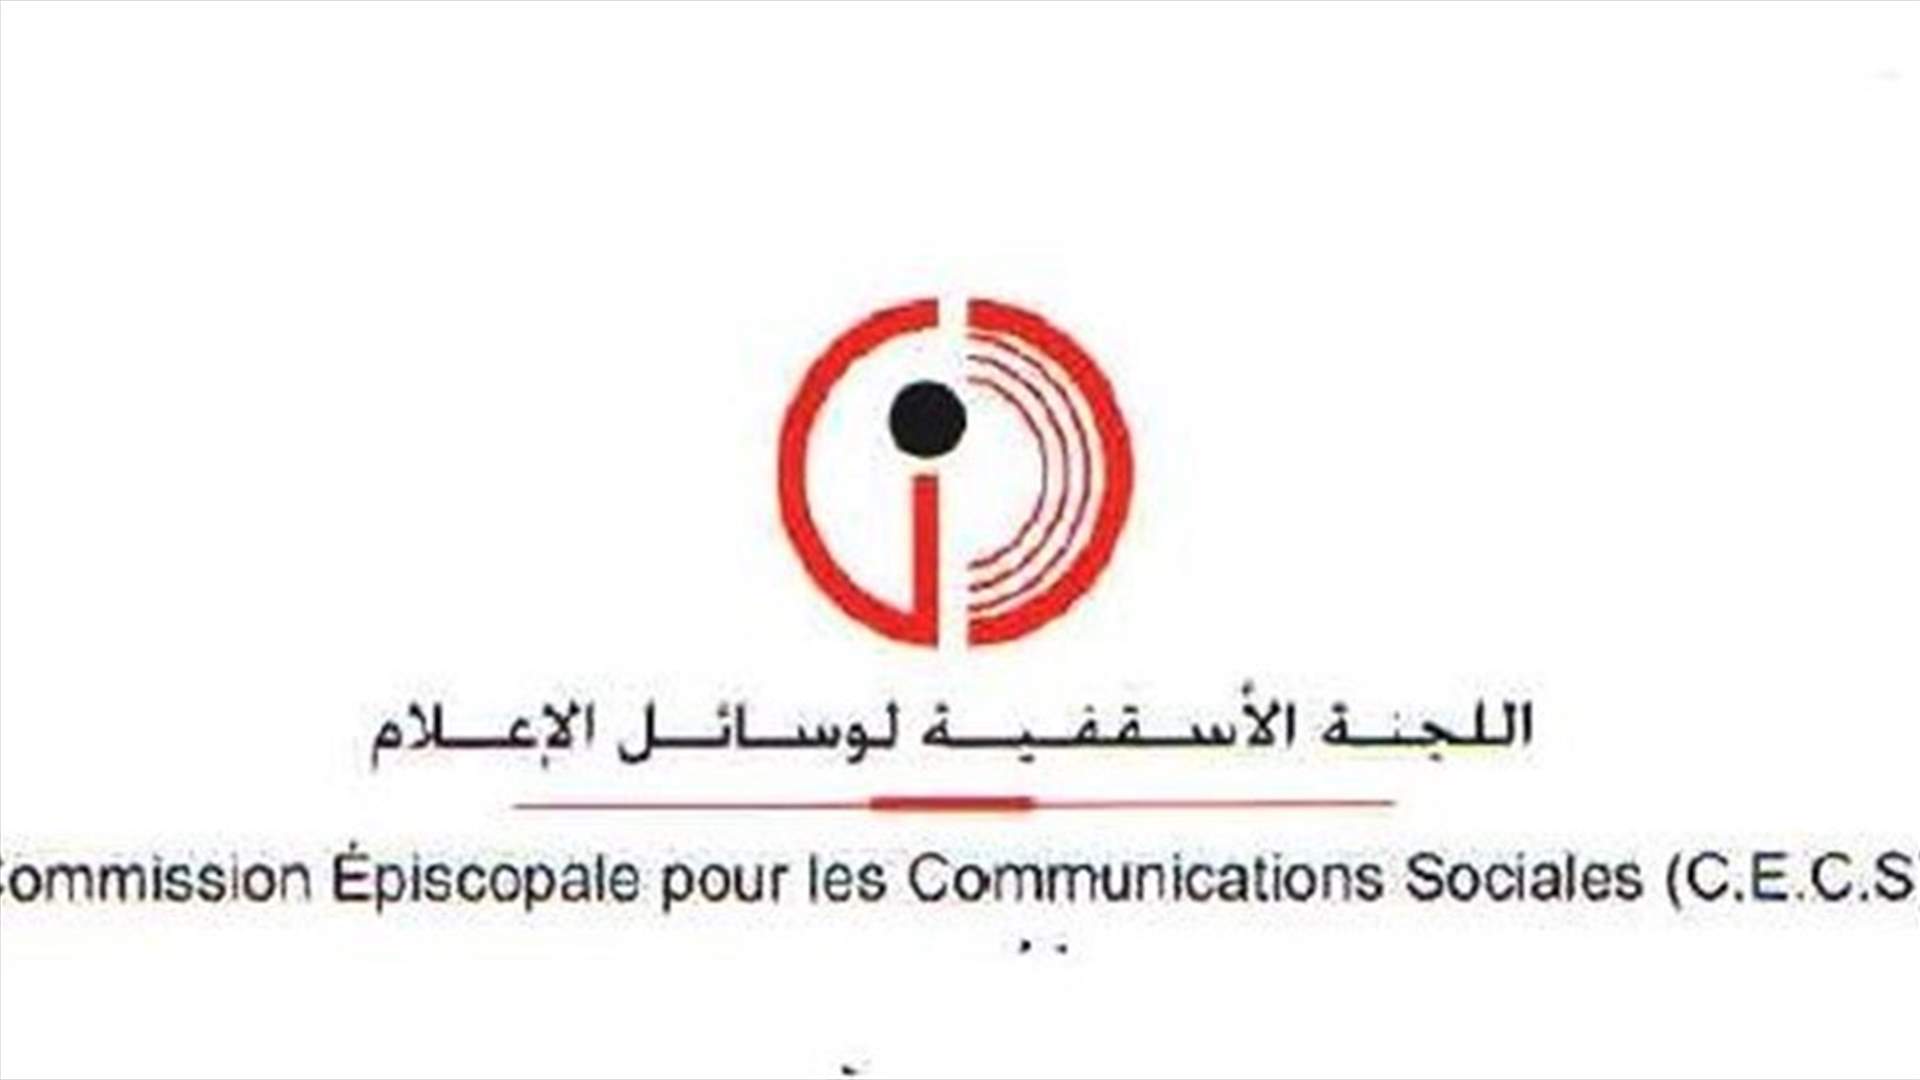 اللجنة الاسقفية لوسائل الاعلام: نداء البطريرك يهدف الى حماية الكيان وفرصة لانقاذ لبنان